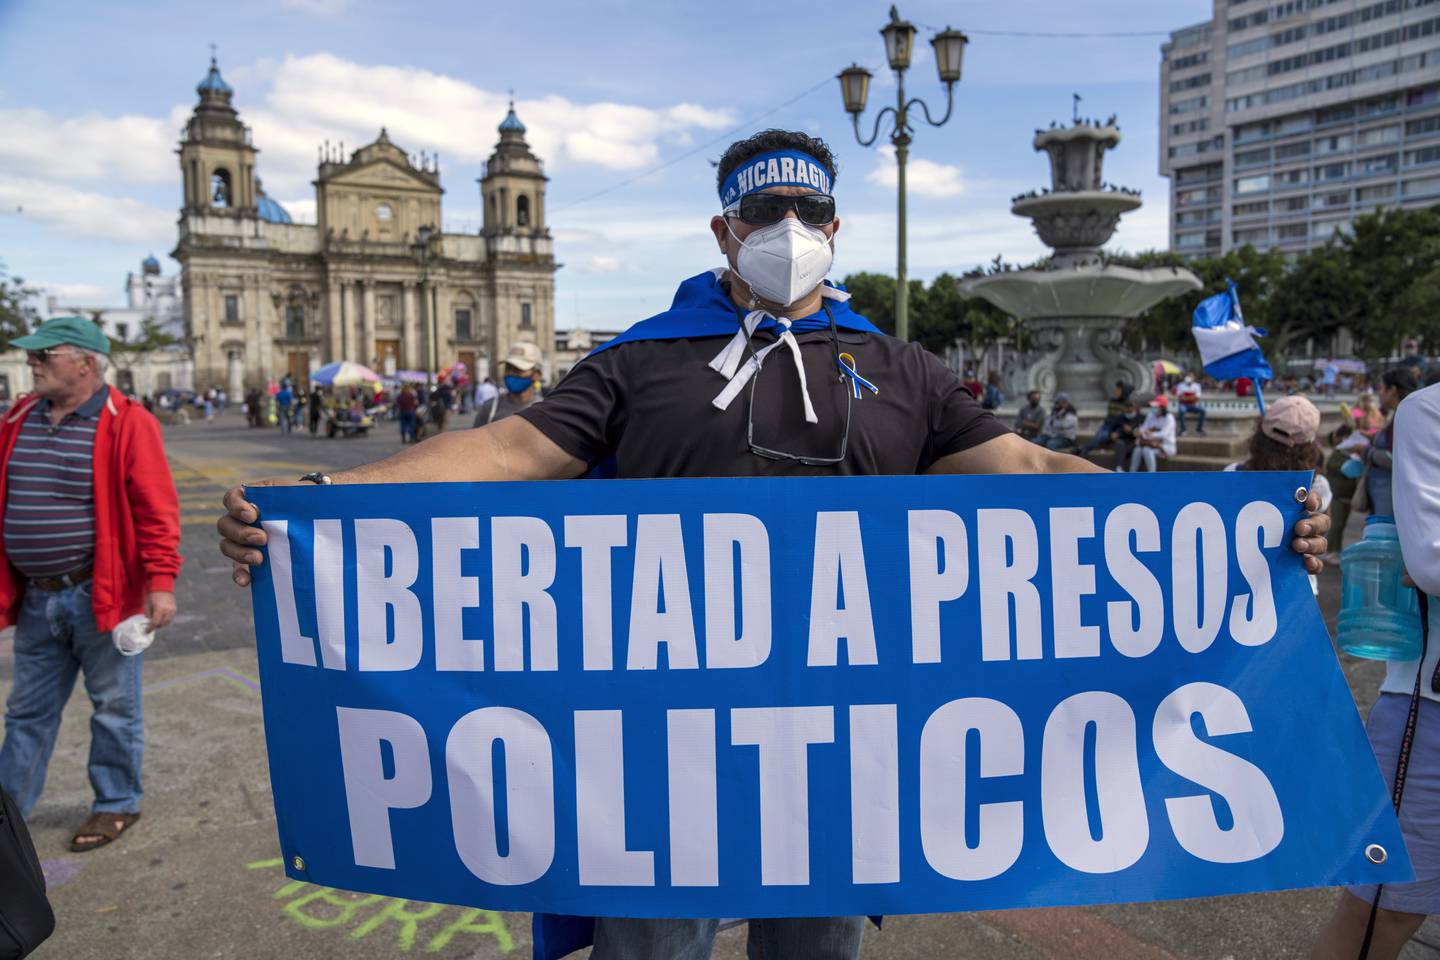 KNEBLES: Flere grupper og personer som er kritiske til Ortegas regime får munnkurv og blir arrestert. På bildet ser vi en nicaraguansk mann som holder et spansk skilt med teksten "Frihet for politiske fanger".